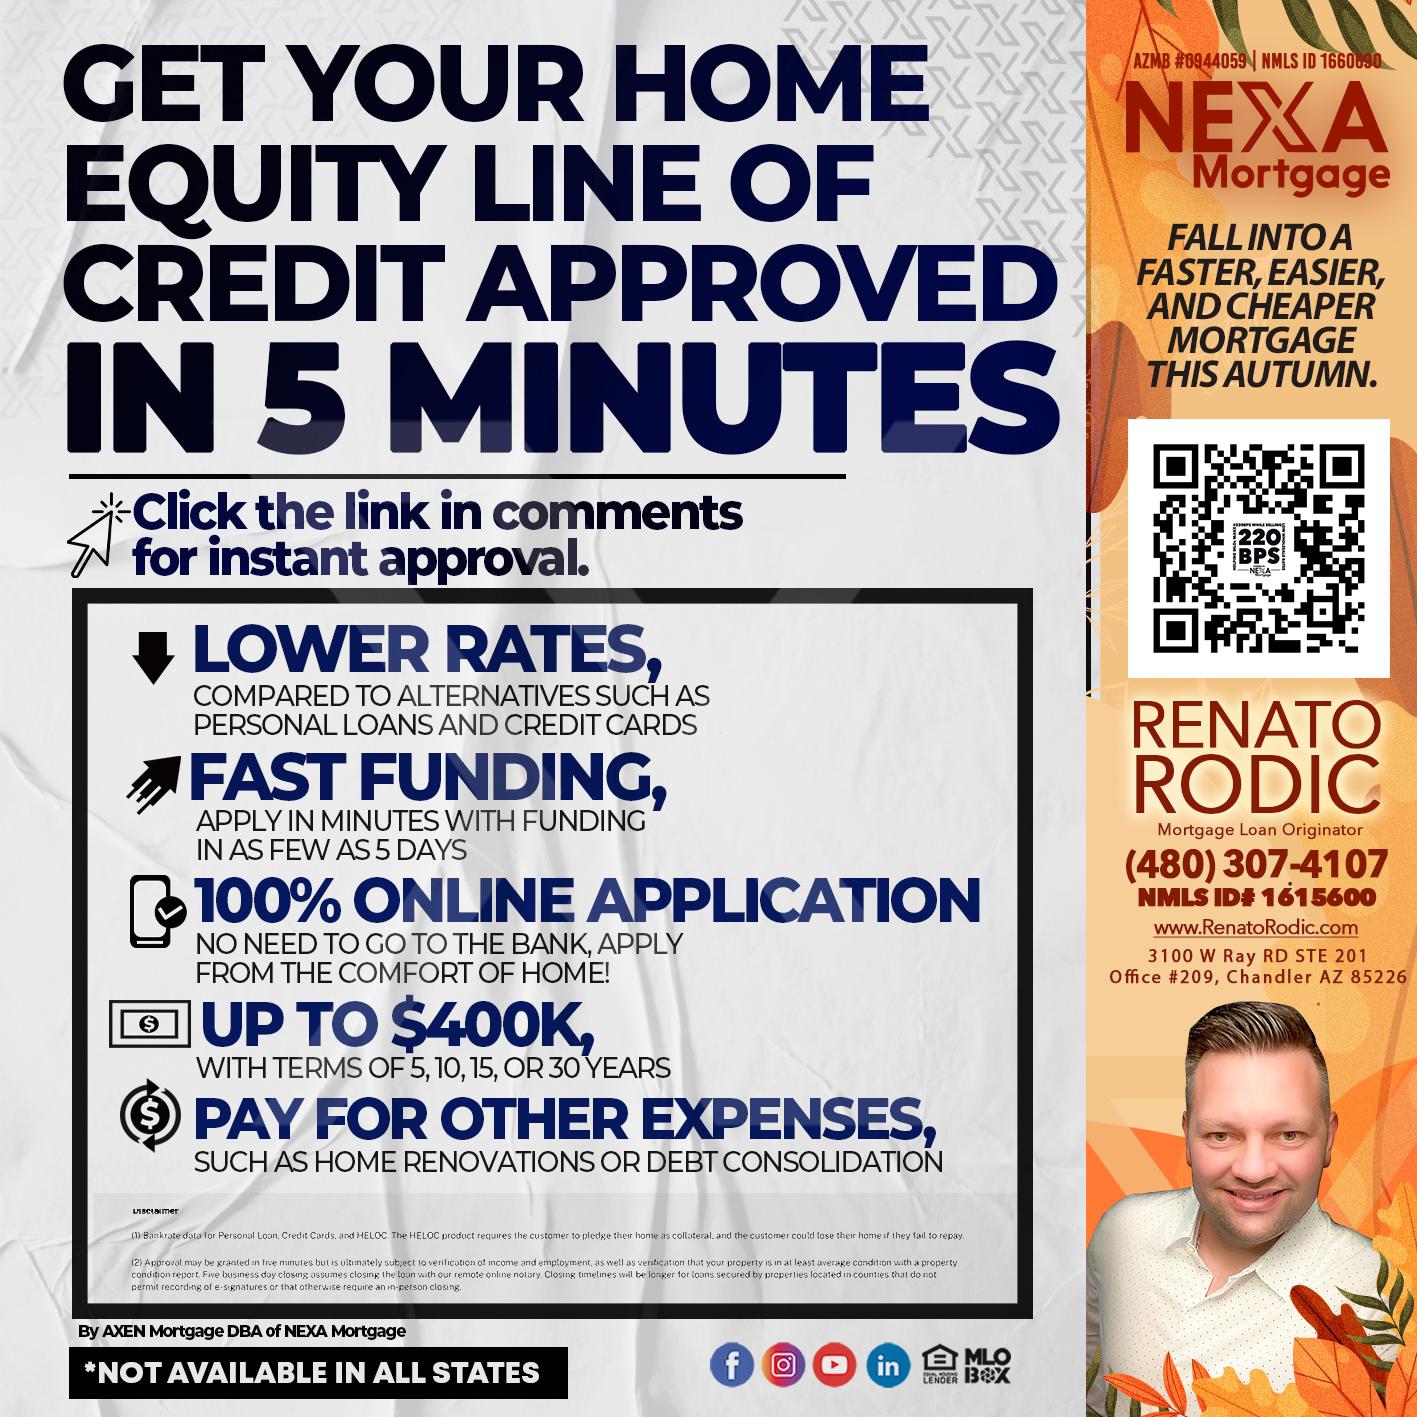 5 minutes - Renato Rodic -Mortgage Loan Originator